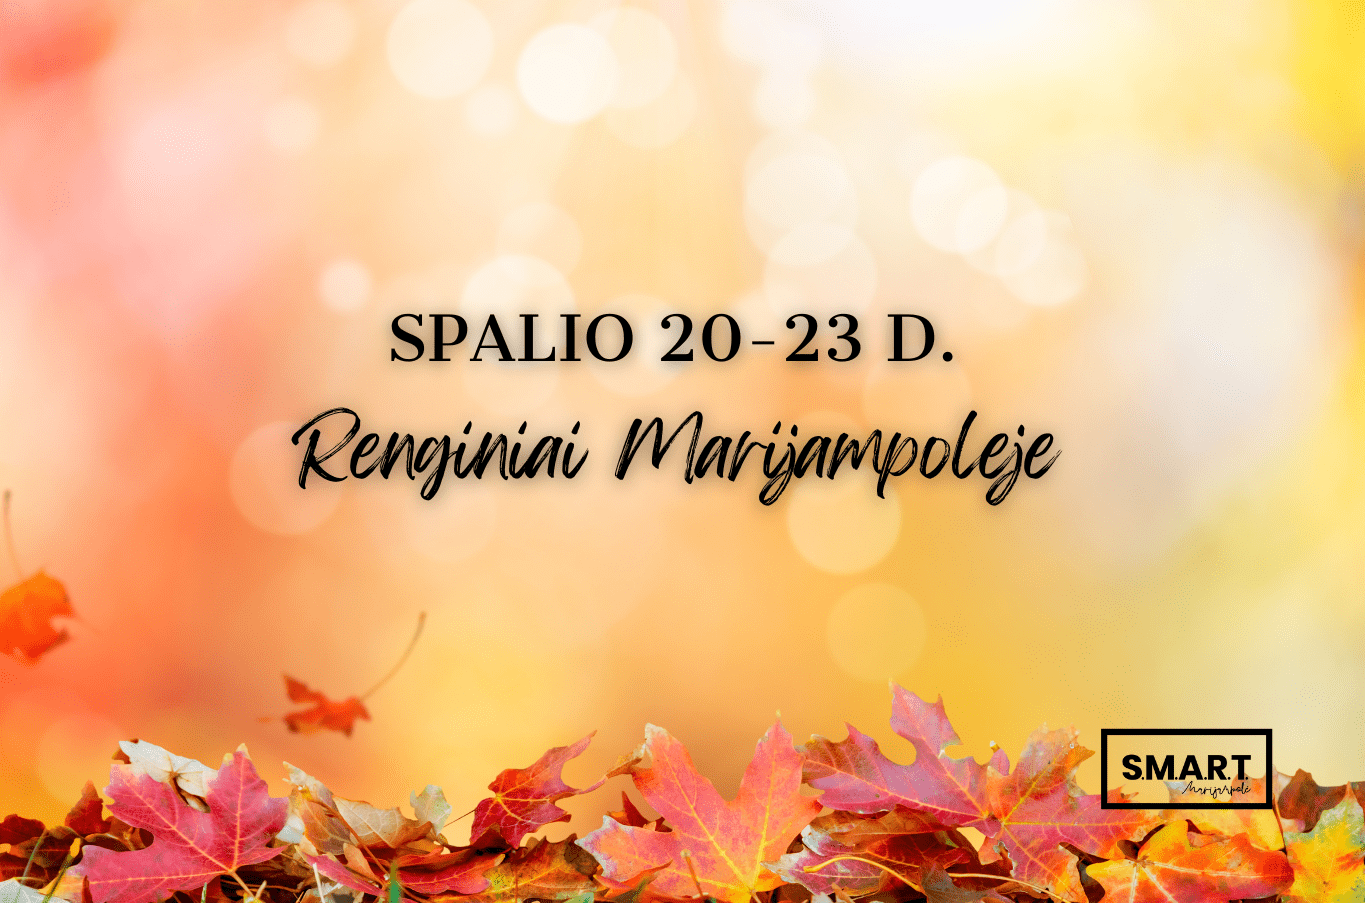 You are currently viewing Savaitgalio renginiai Marijampolėje | 10.20-10.23